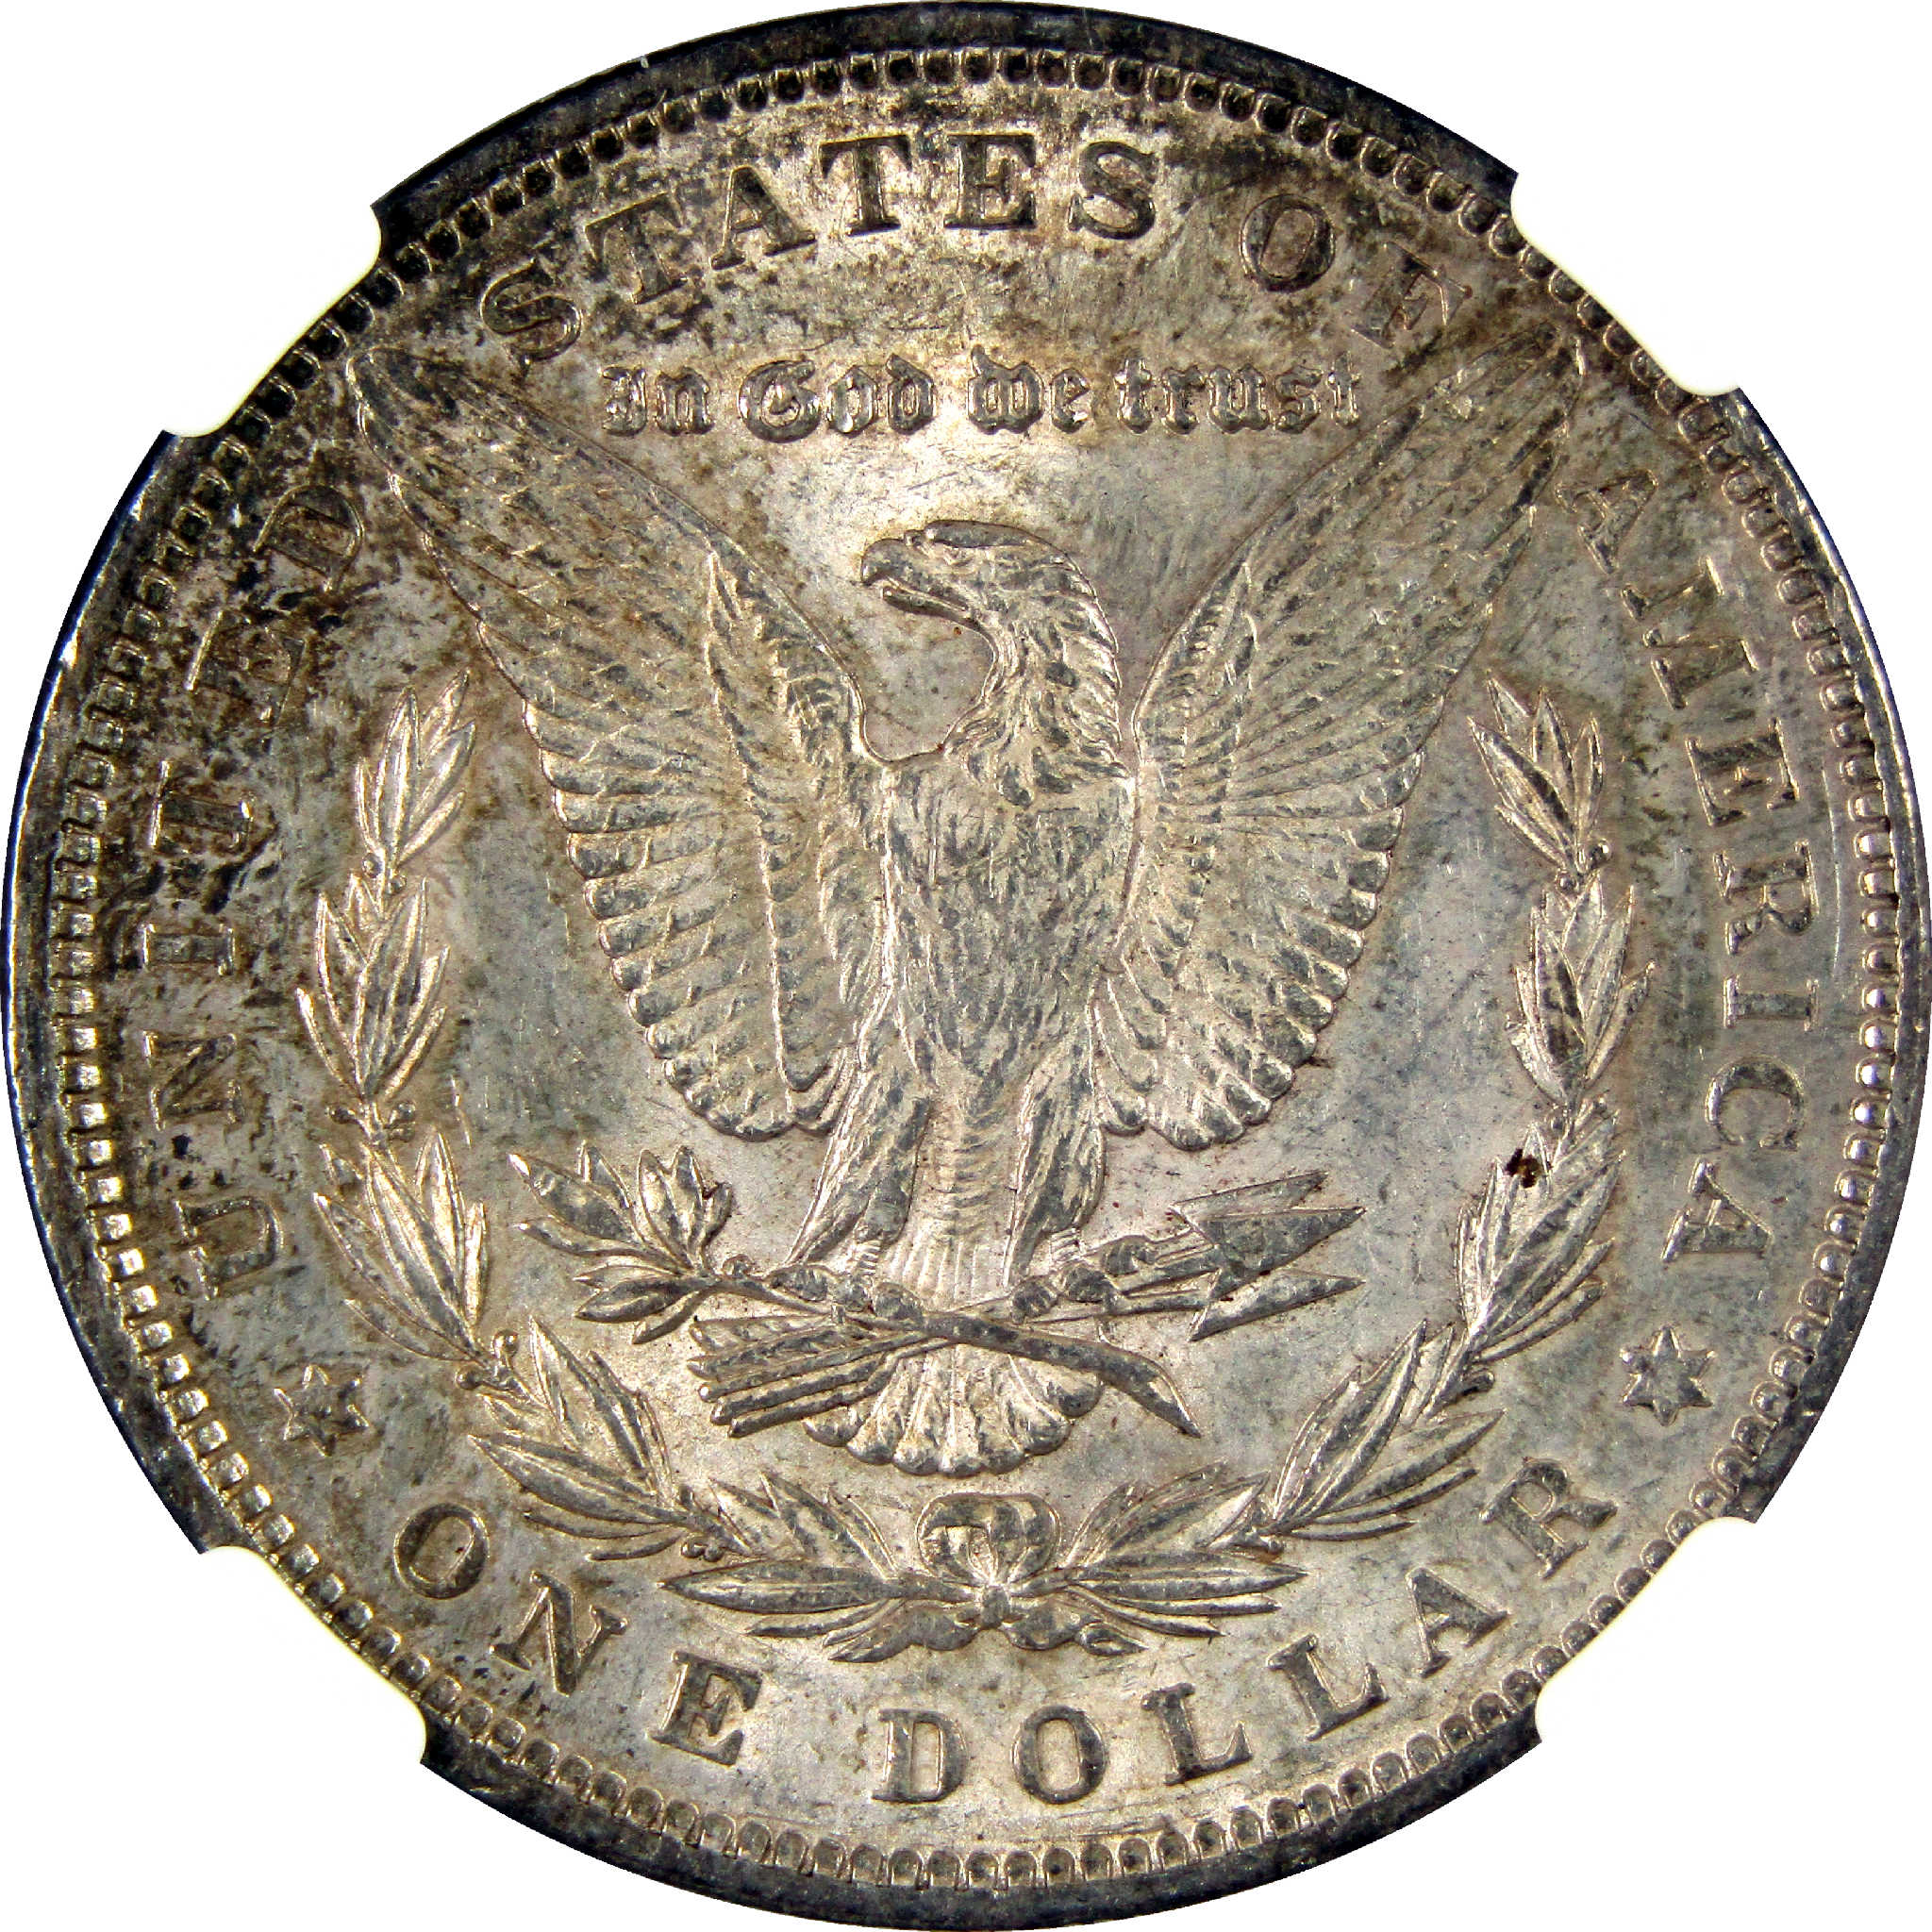 1892 Morgan Dollar AU 58 NGC Silver $1 Coin SKU:I11388 - Morgan coin - Morgan silver dollar - Morgan silver dollar for sale - Profile Coins &amp; Collectibles